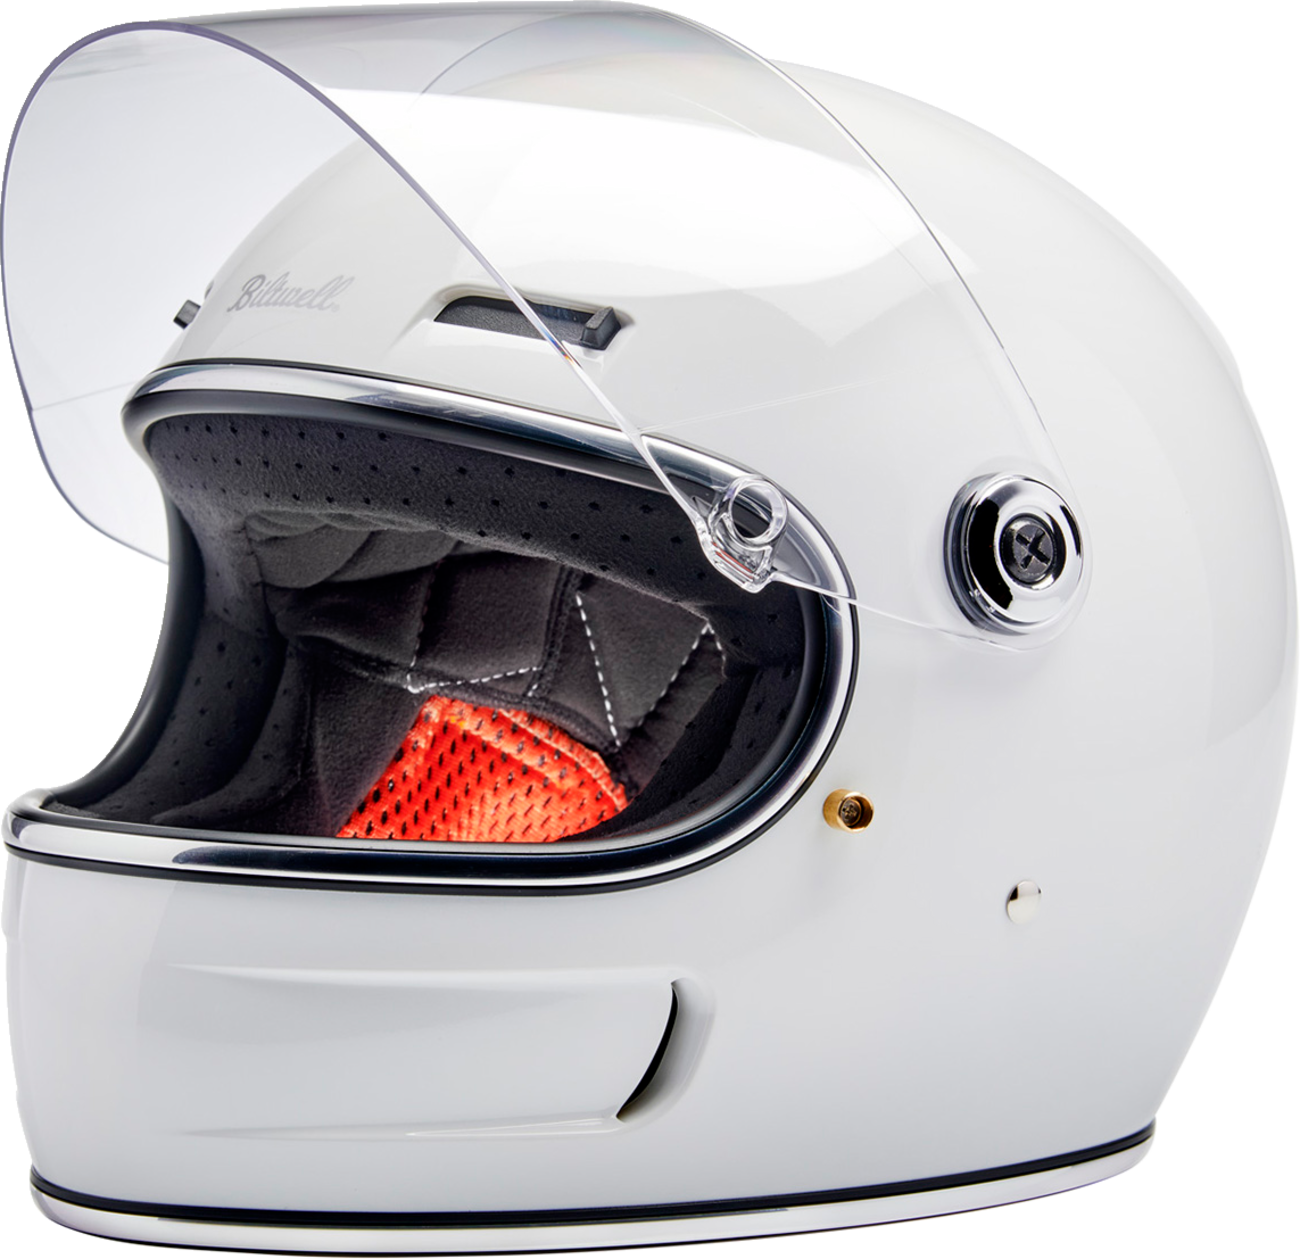 BILTWELL Gringo SV Helmet - Gloss White - Large 1006-104-504